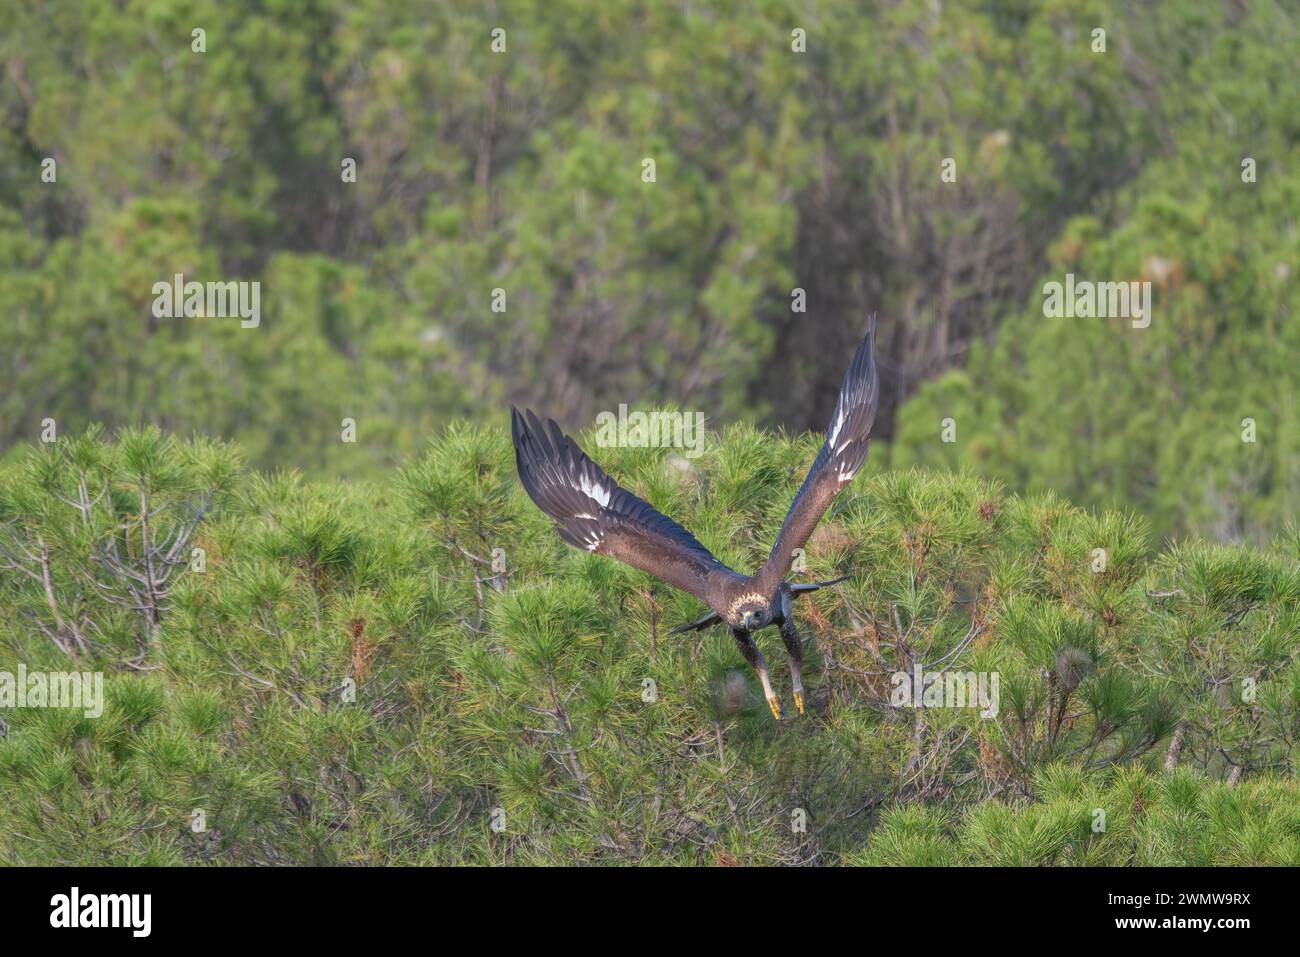 Bellissimo ritratto di un'aquila dorata con ali aperte che iniziano a volare alla ricerca di prede quando era arroccata sui rami di un albero nella foresta Foto Stock